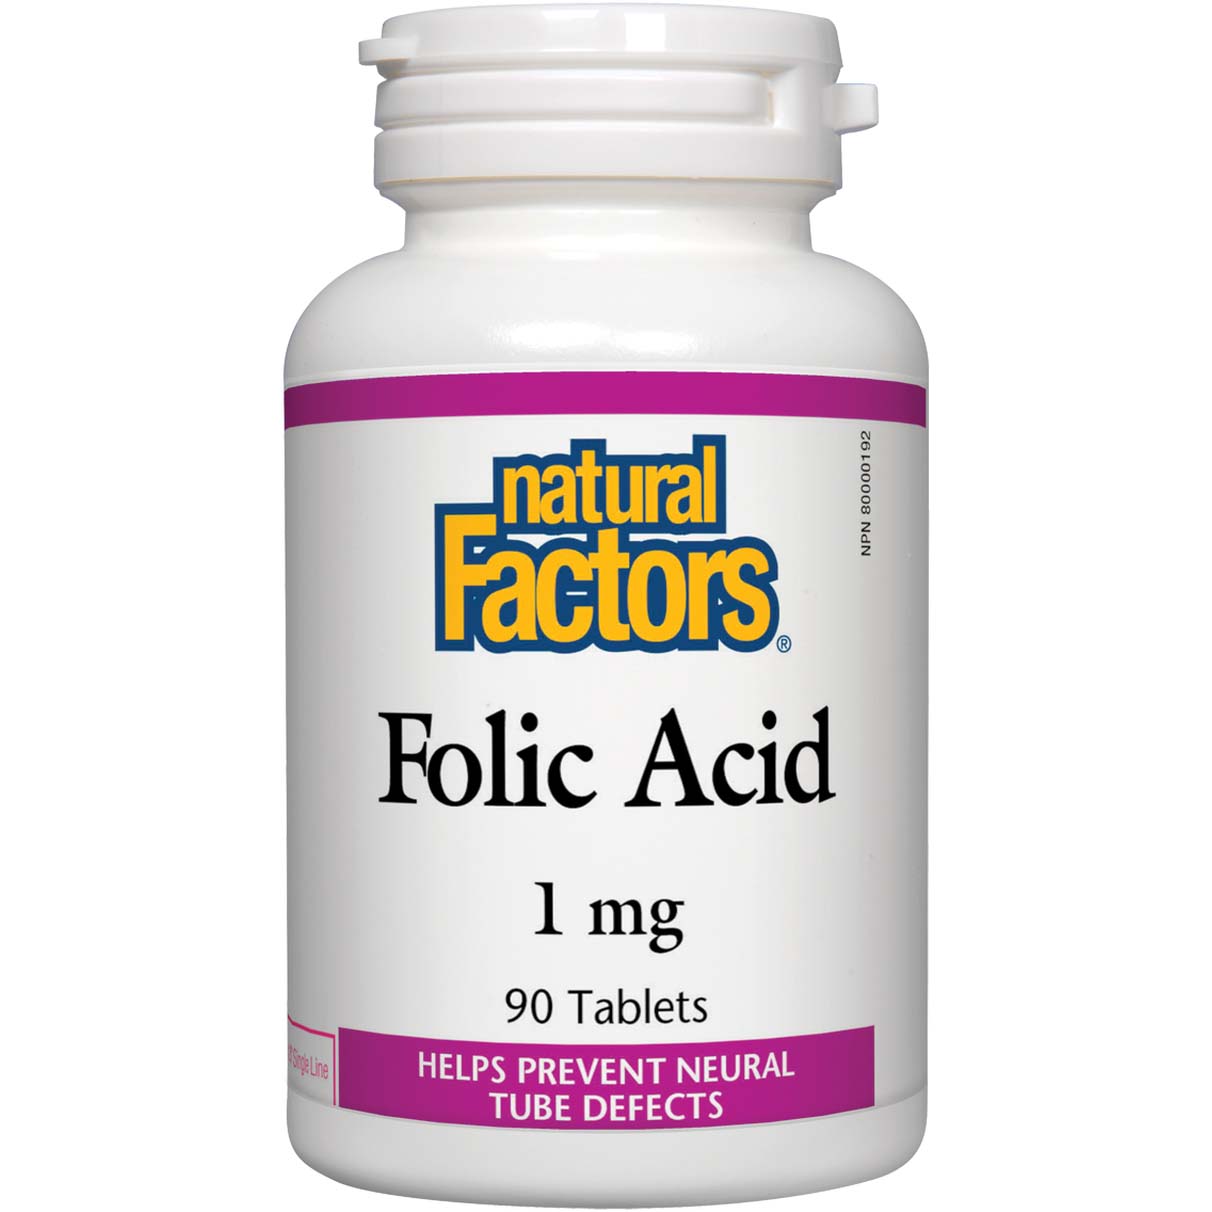 Natural Factors Folic Acid, 1 mg, 90 Tablets